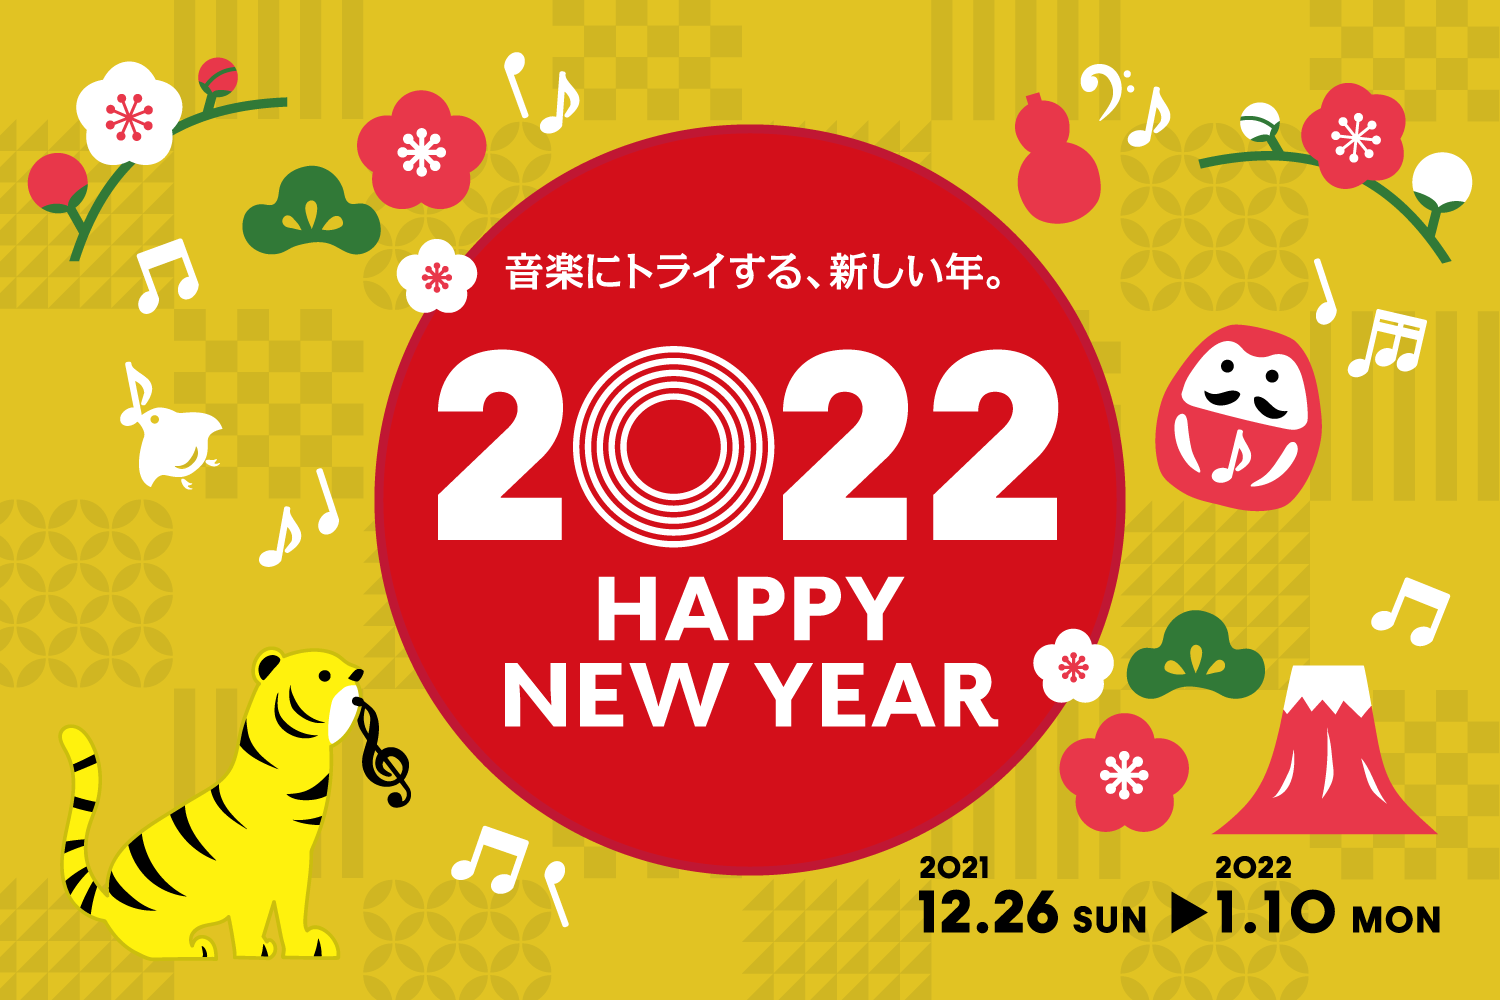 【初売りフェア総合案内】2021年12月26日（日）～2022年1月10日（月・祝）開催♪HAPPY NEW YEAR フェア 2022 ♪